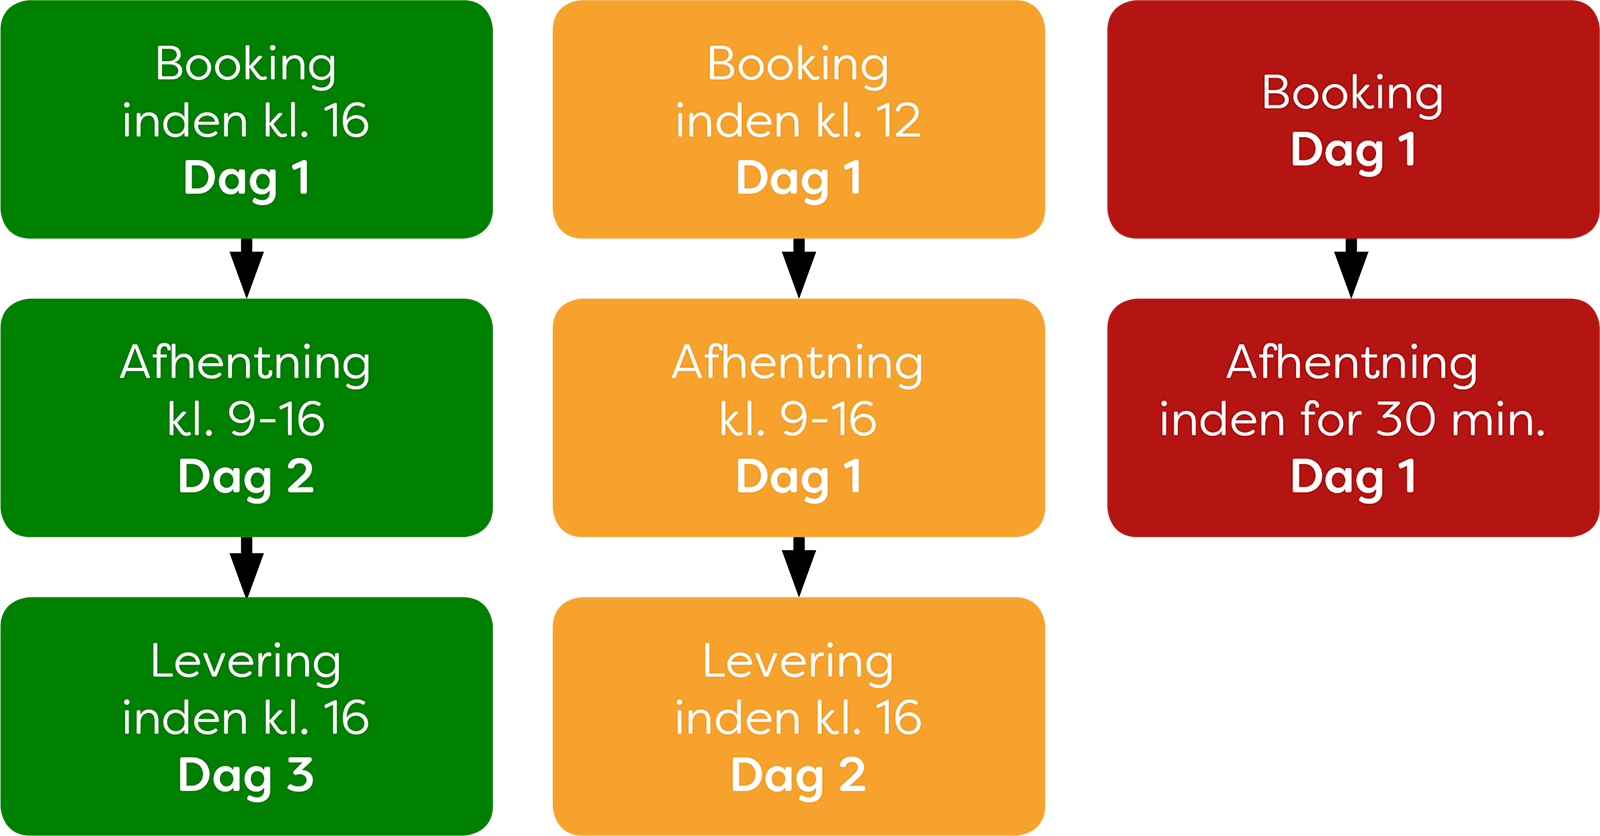 Overblik over de 3 transportordningedr (grøn, gul og rød)